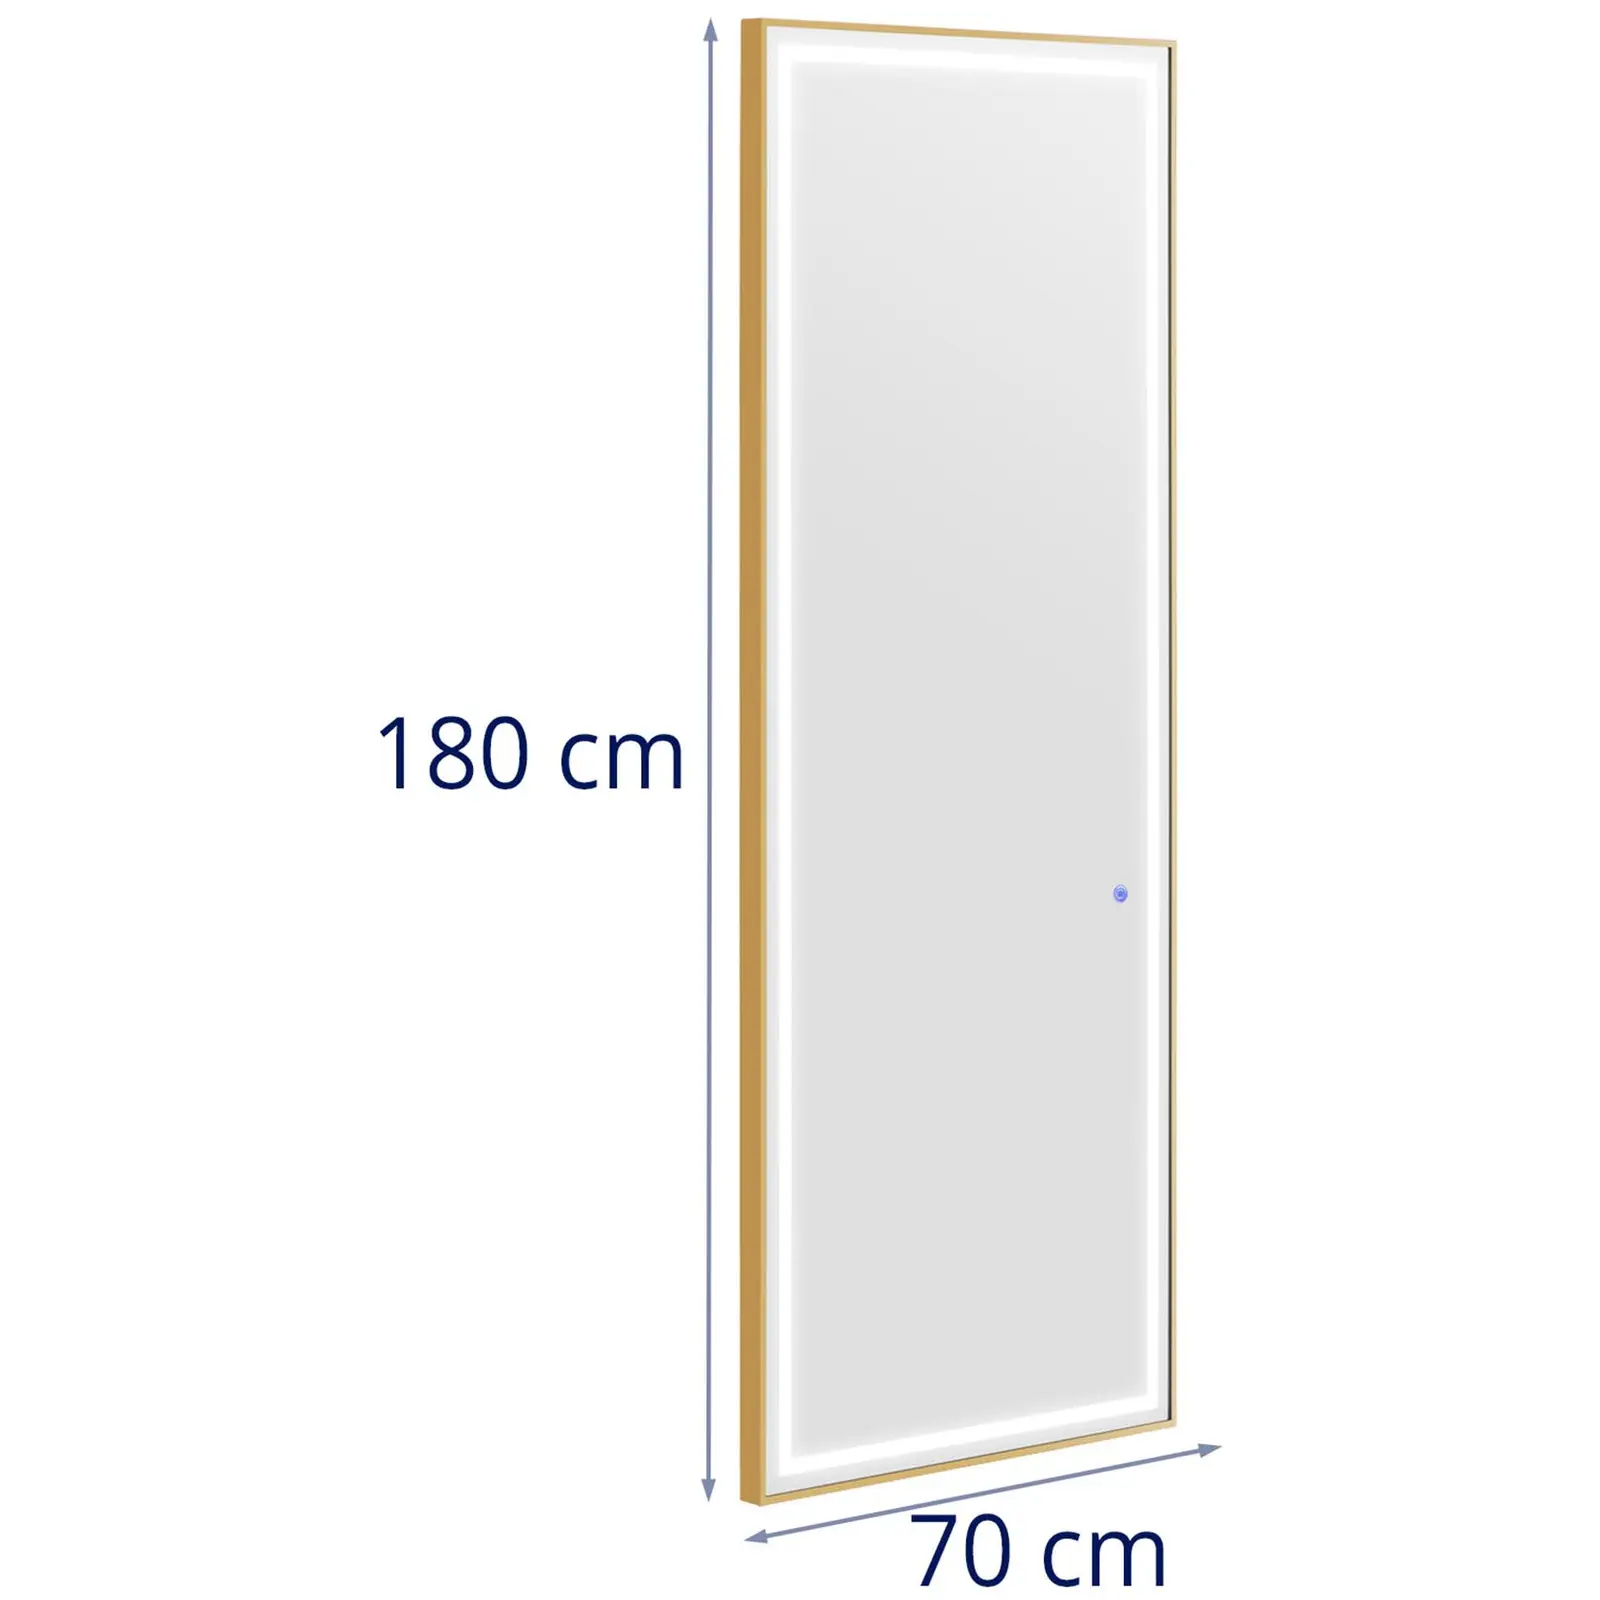 Kappersspiegel - LED-verlichting - extra plat - rechthoekig - 70 x 4 x 180 cm